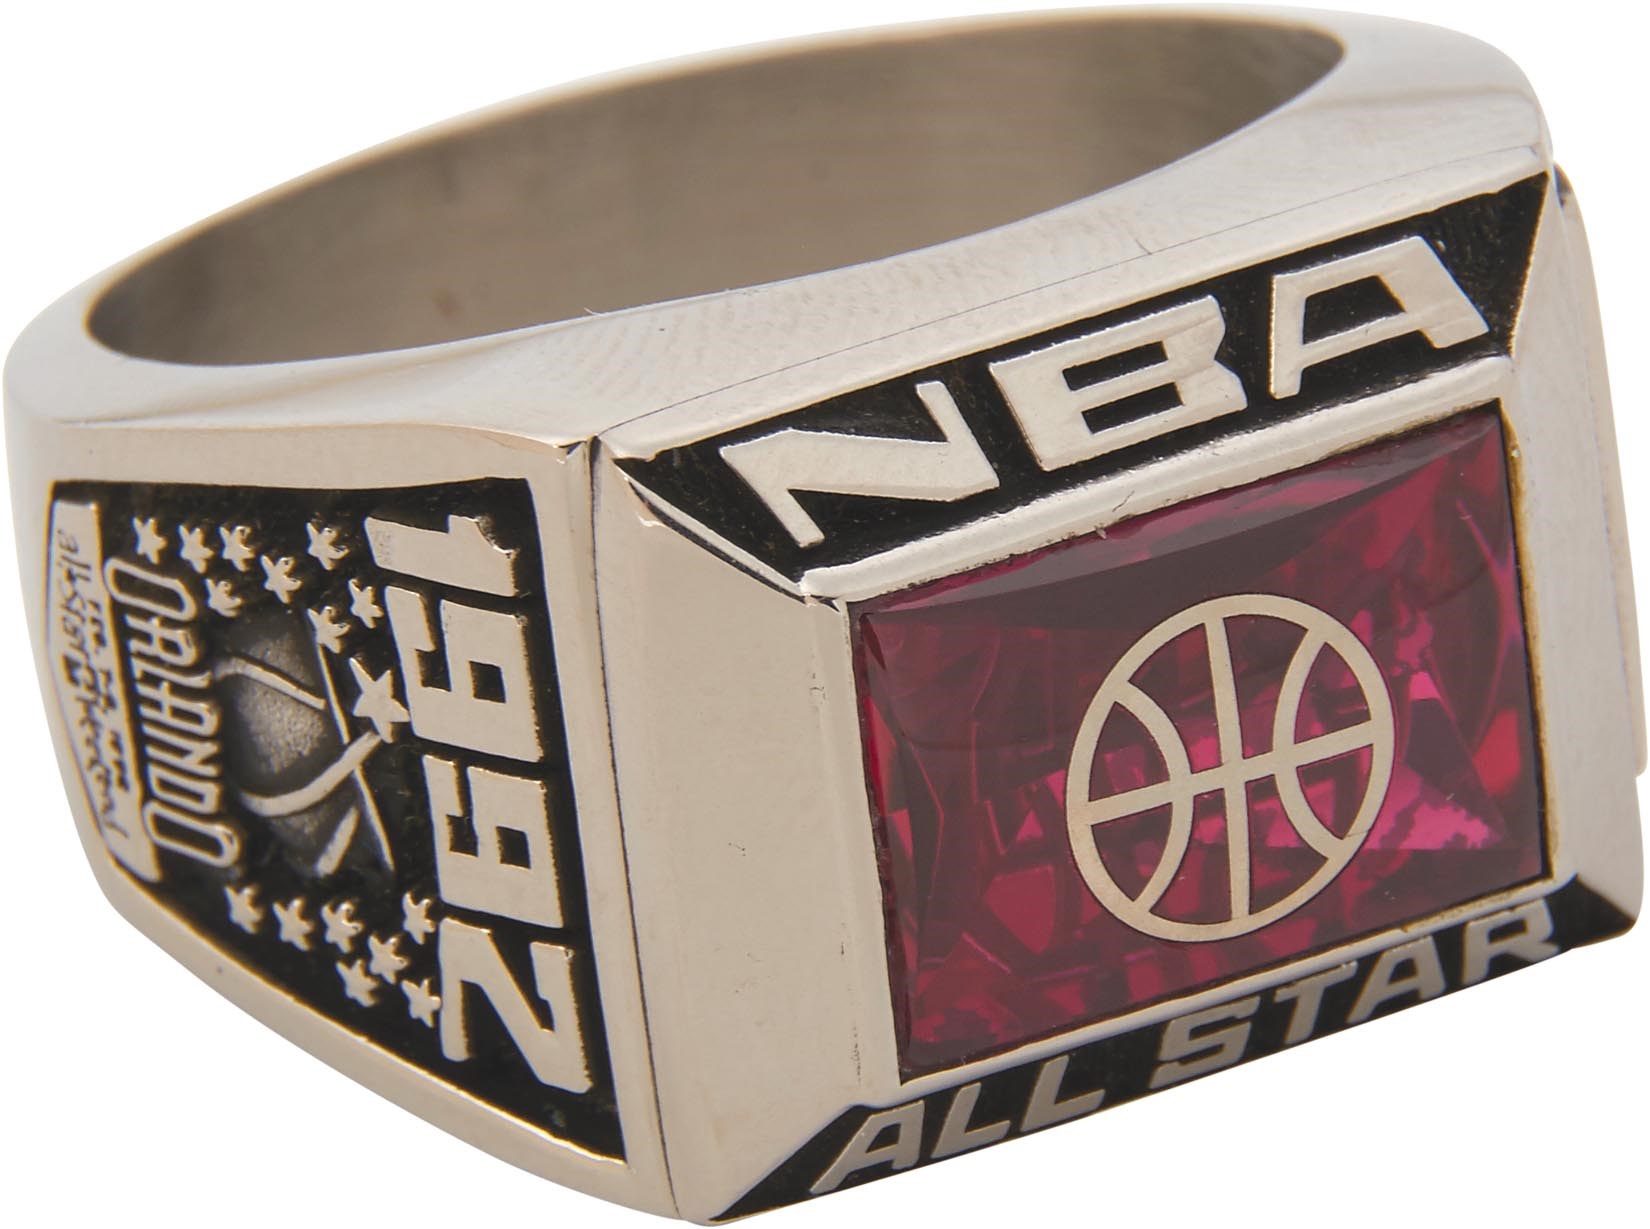 The Oscar Robertson Collection - 1992 Oscar Robertson NBA All-Star Game Ring with Original Box